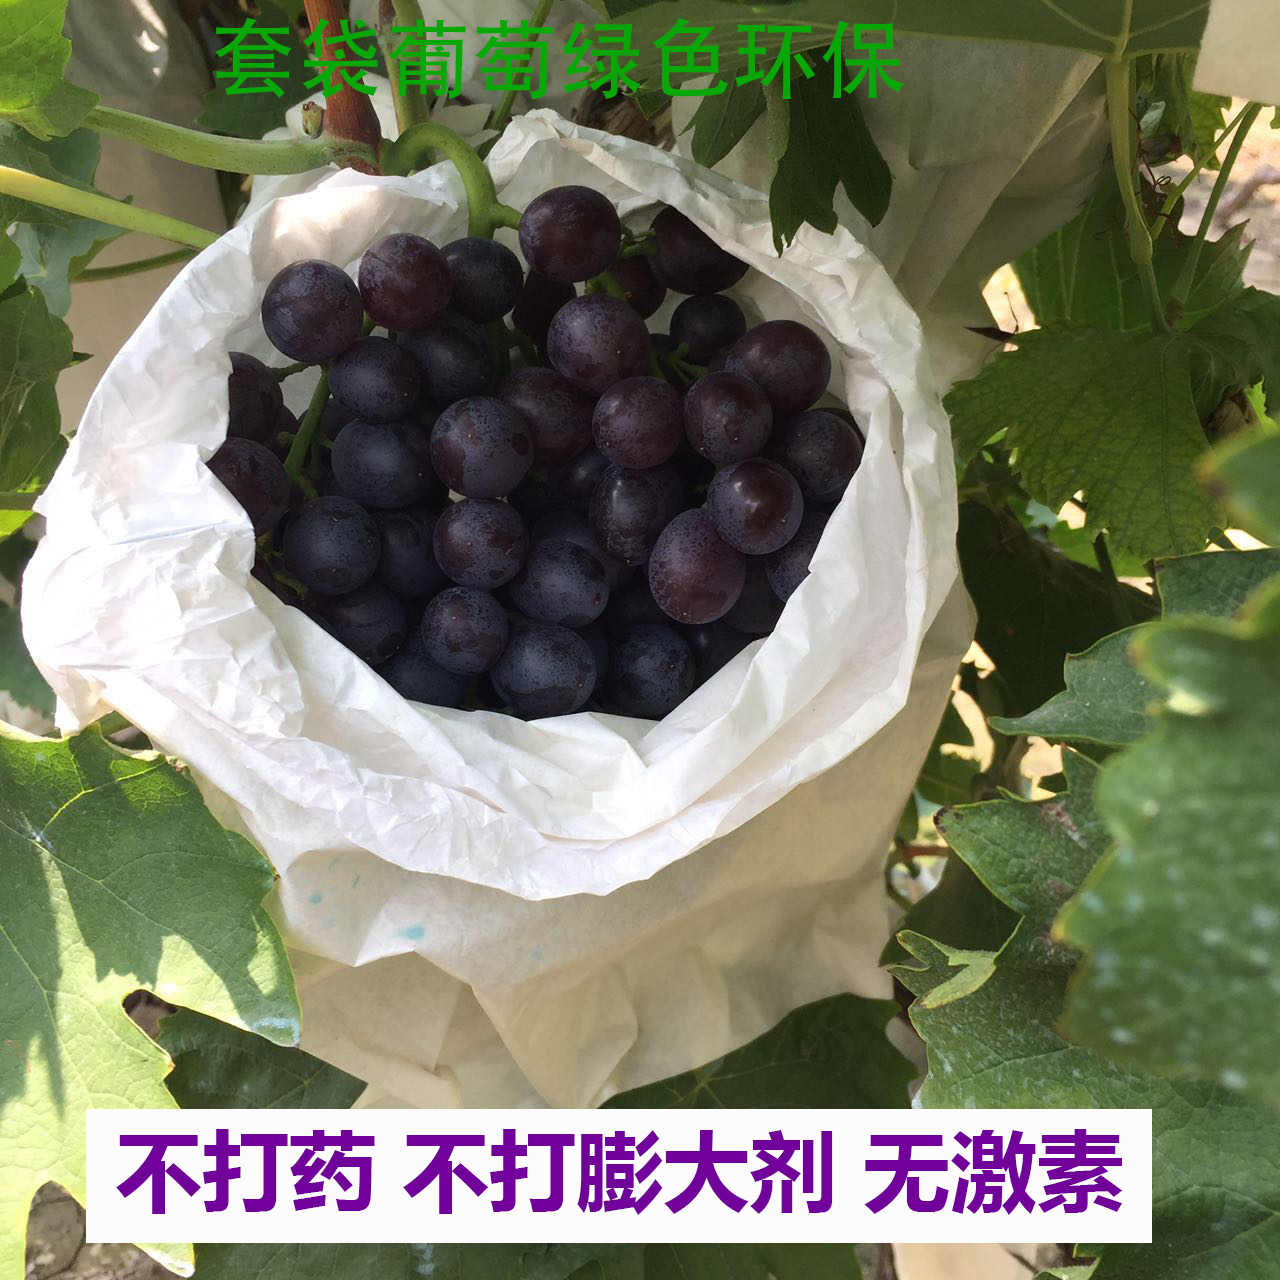 天津汉沽茶淀玫瑰香葡萄新鲜水果孕妇保鲜储藏茶淀果园直发四斤